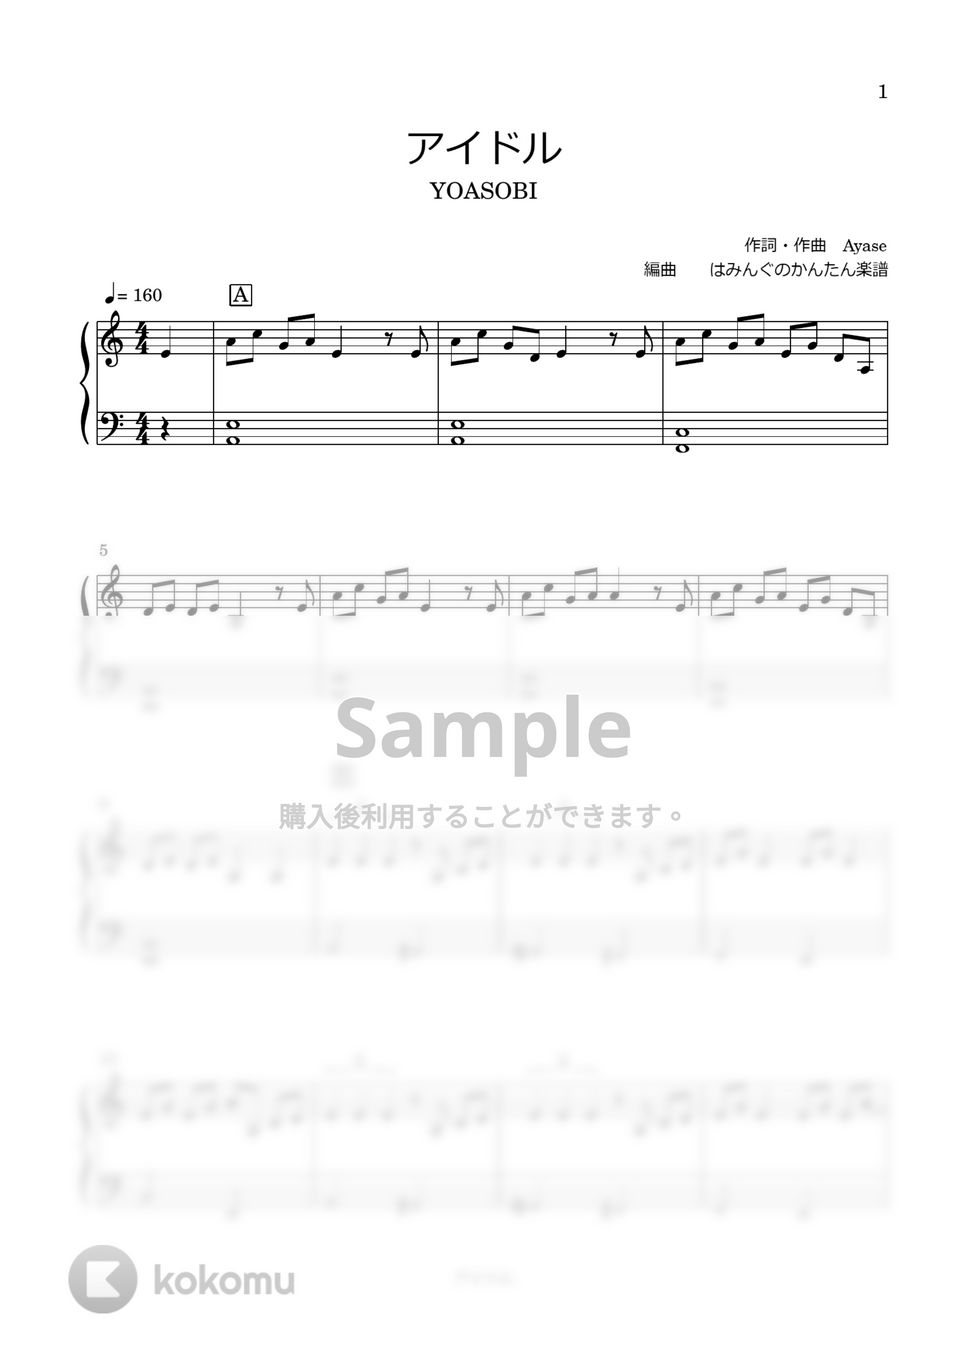 YOASOBI - アイドル【アニメ『推しの子』OPテーマ】 (転調なし) by はみんぐのかんたん楽譜